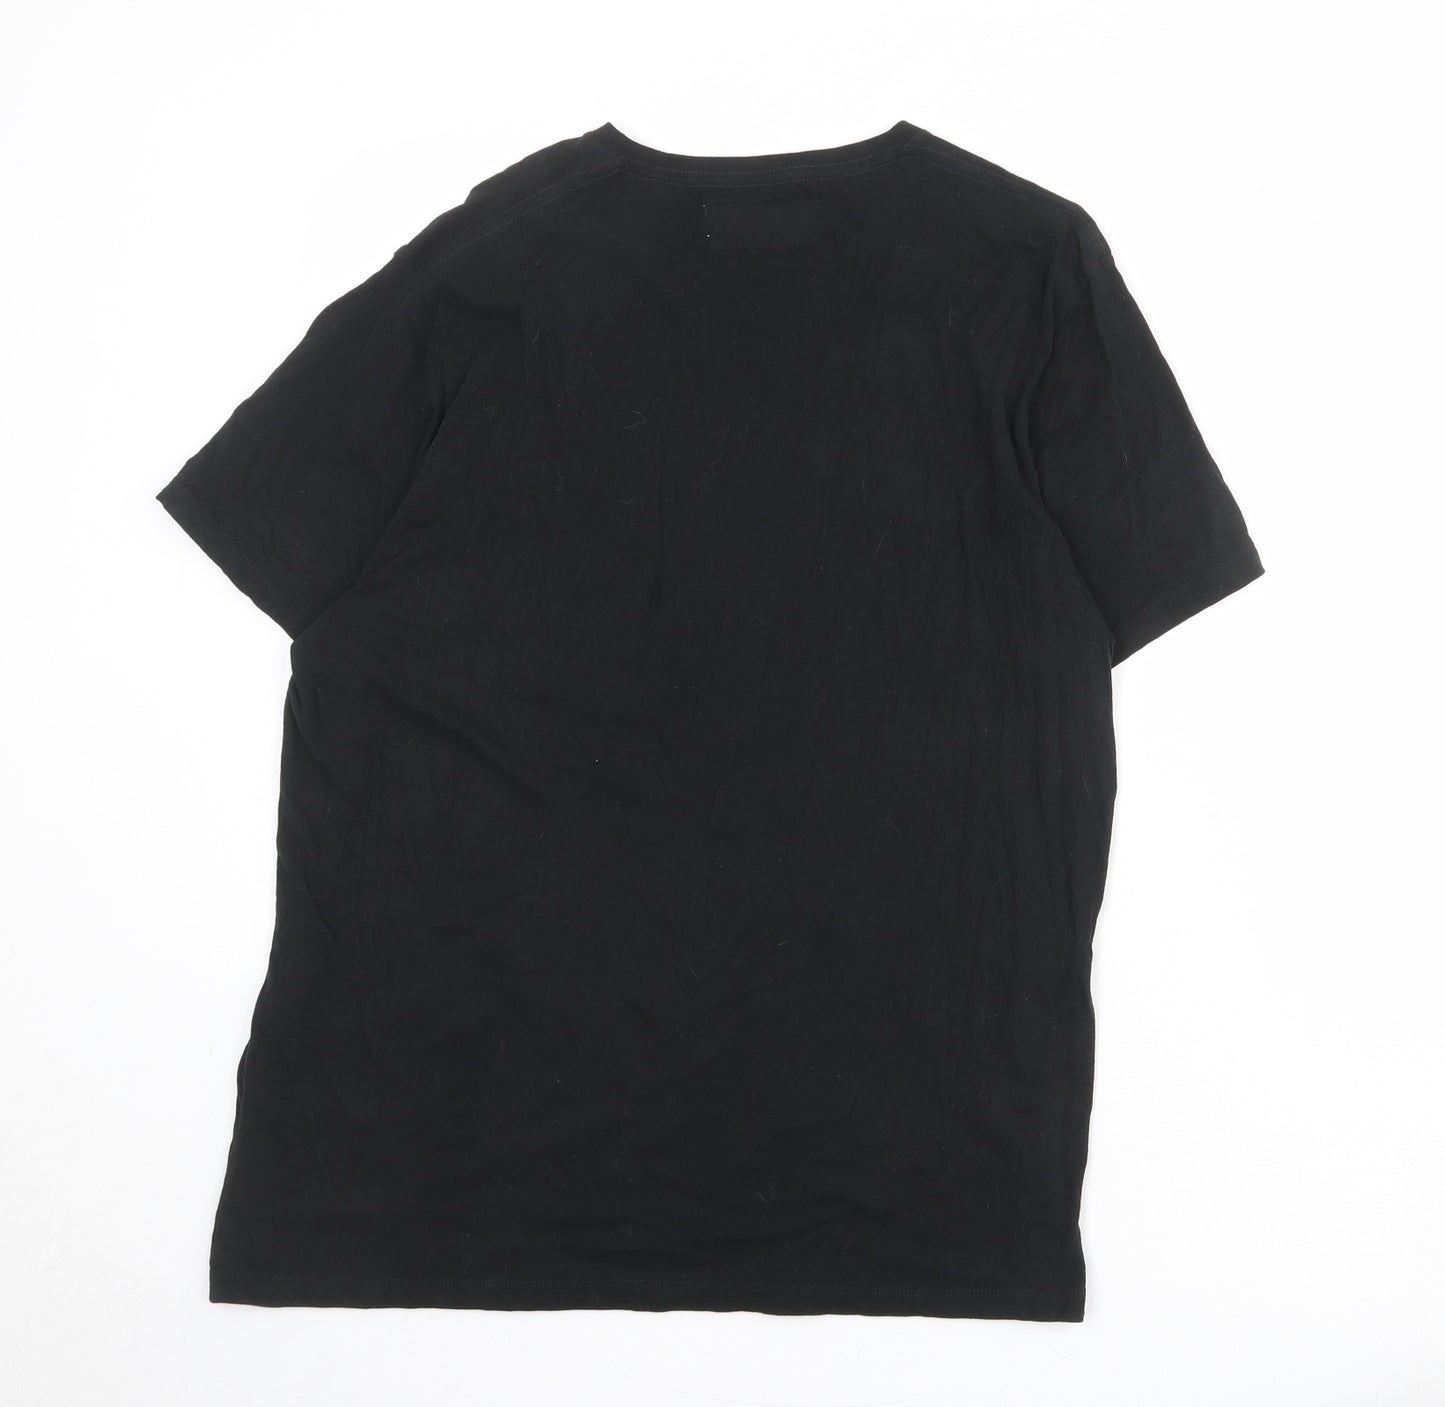 Abercrombie & Fitch Mens Black Cotton T-Shirt Size L Round Neck